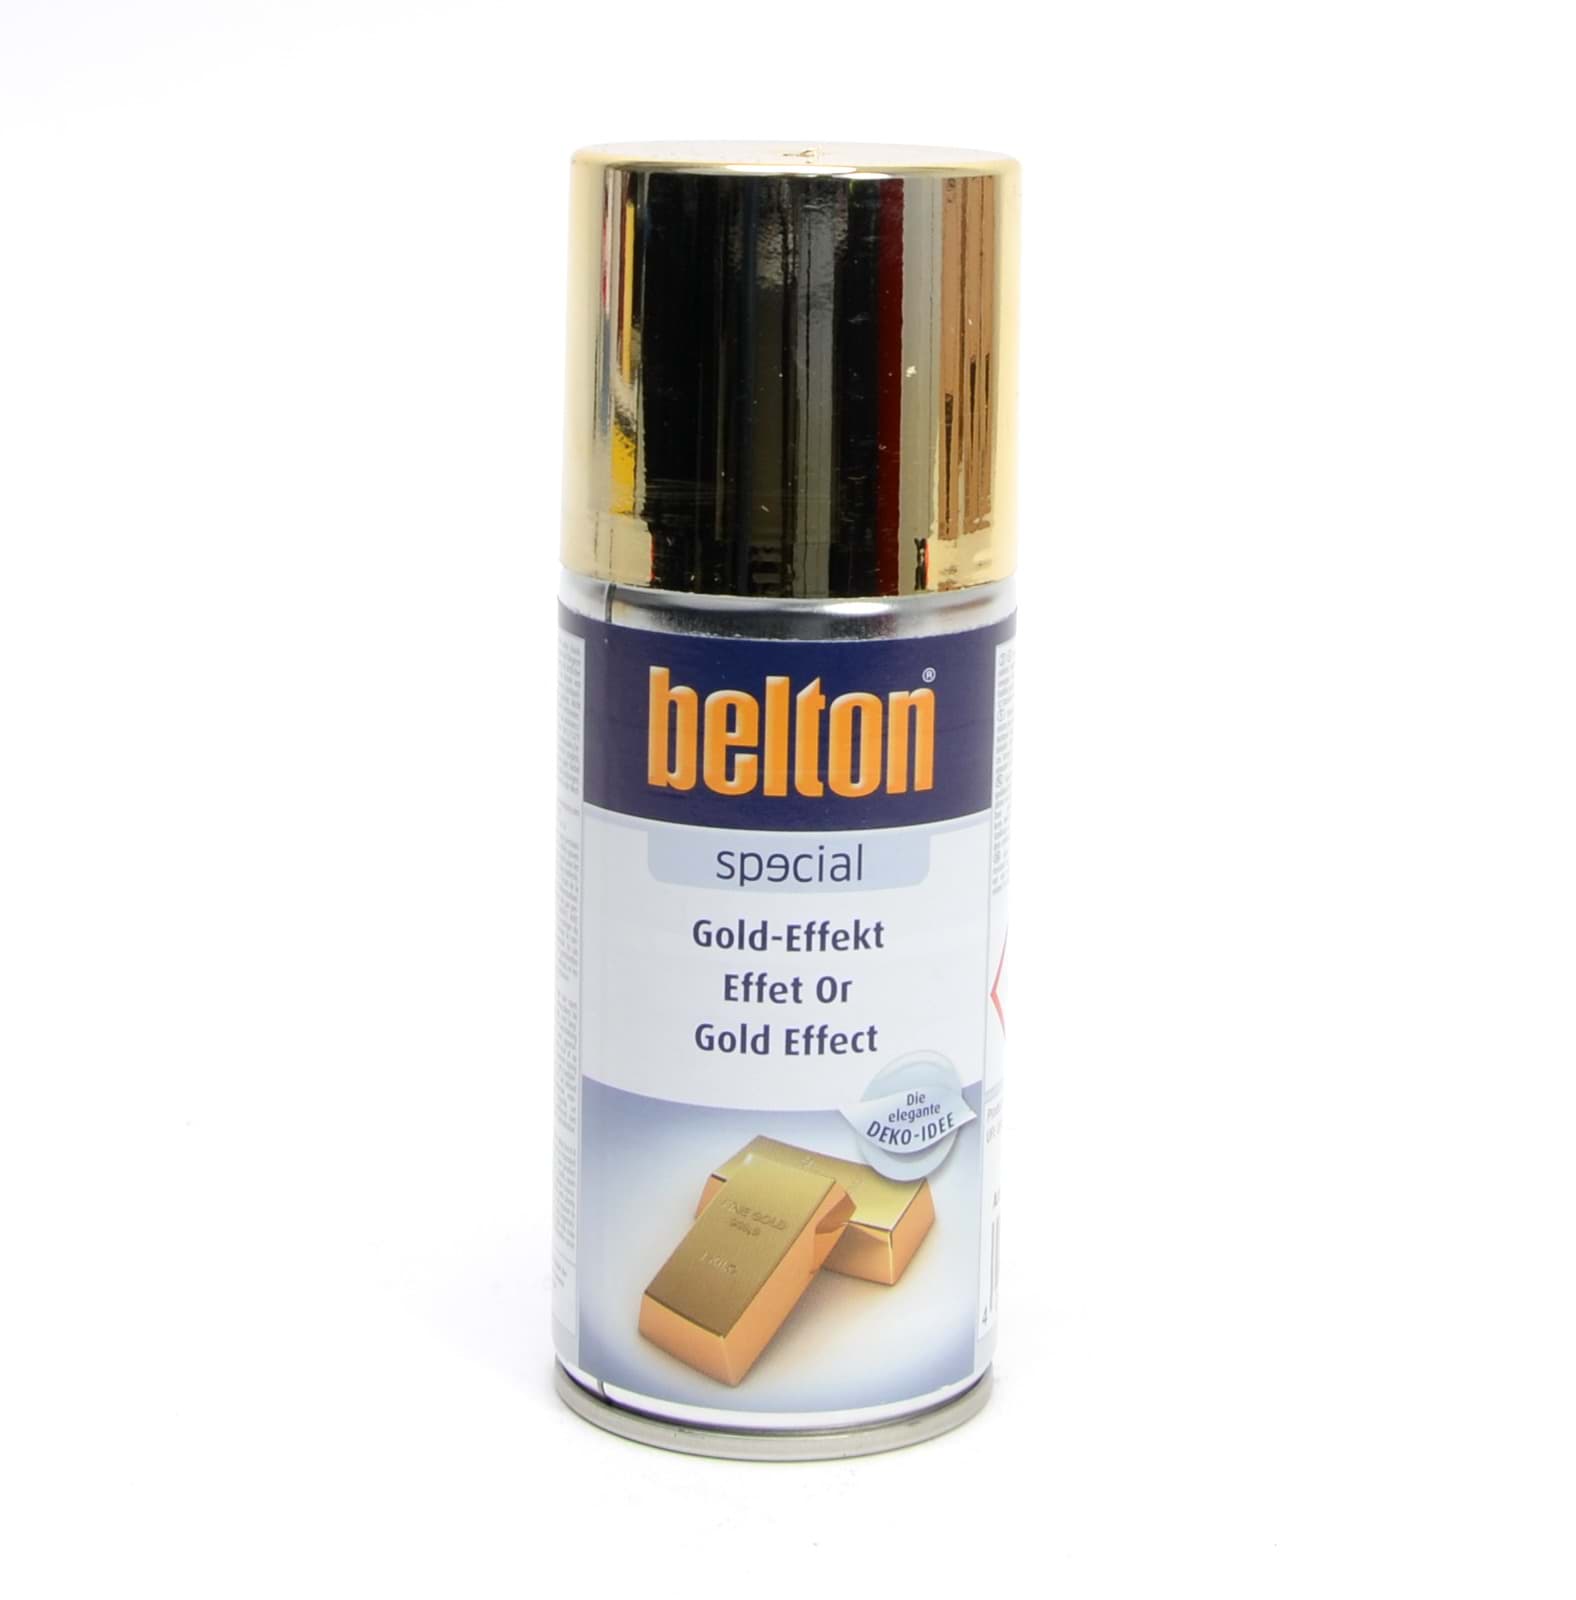 Afbeelding van Belton SPECIAL GOLD-EFFEKT 150ml